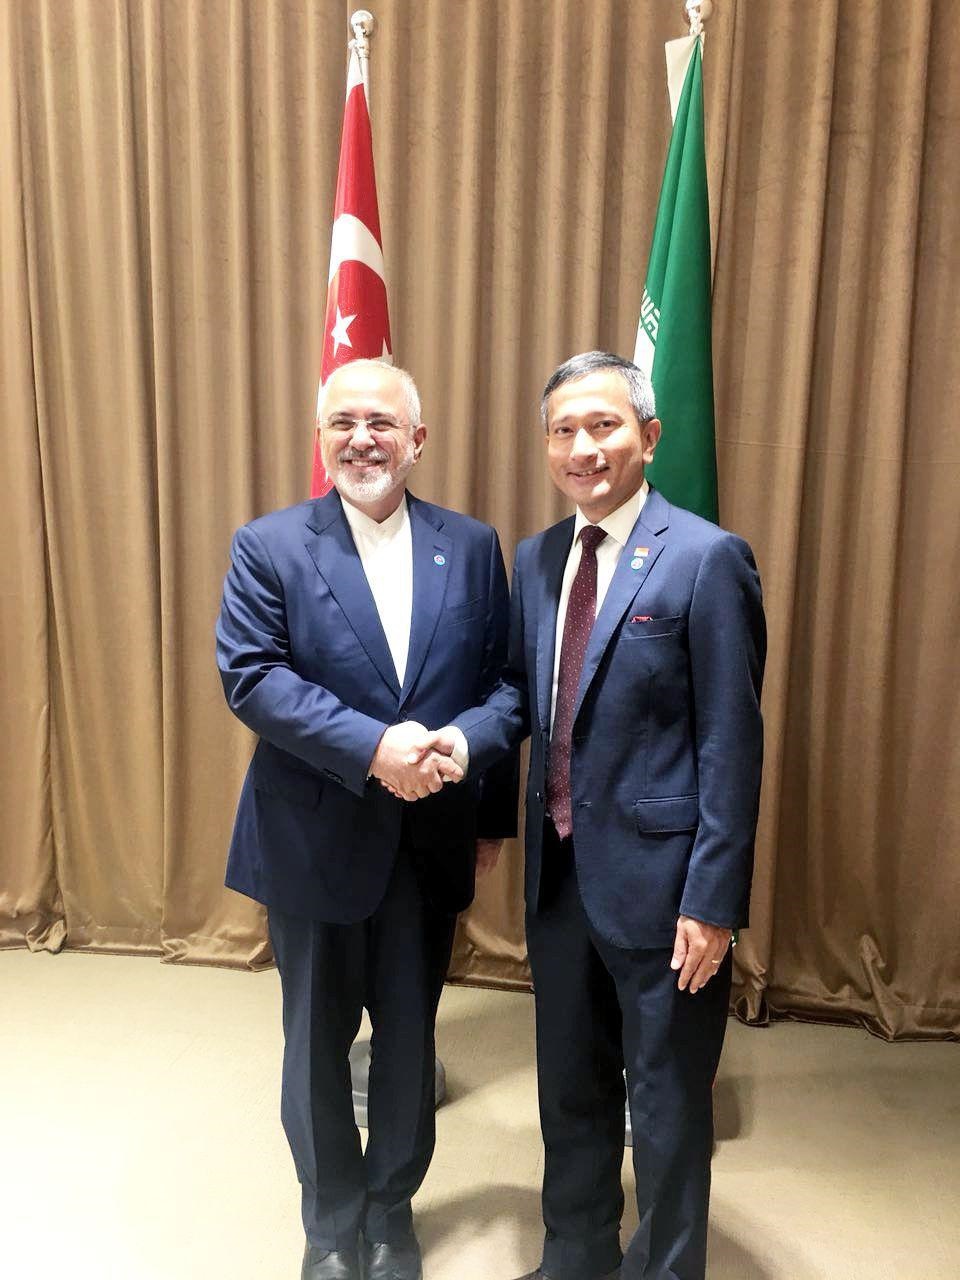 محمد جواد ظریف وزیر امور خارجه جمهوری اسلامی ایران که در سنگاپور حضور دارد صبح امروز با ویویان بالاکریشنان وزیر امور خارجه سنگاپور دیدار و گفتگو کرد